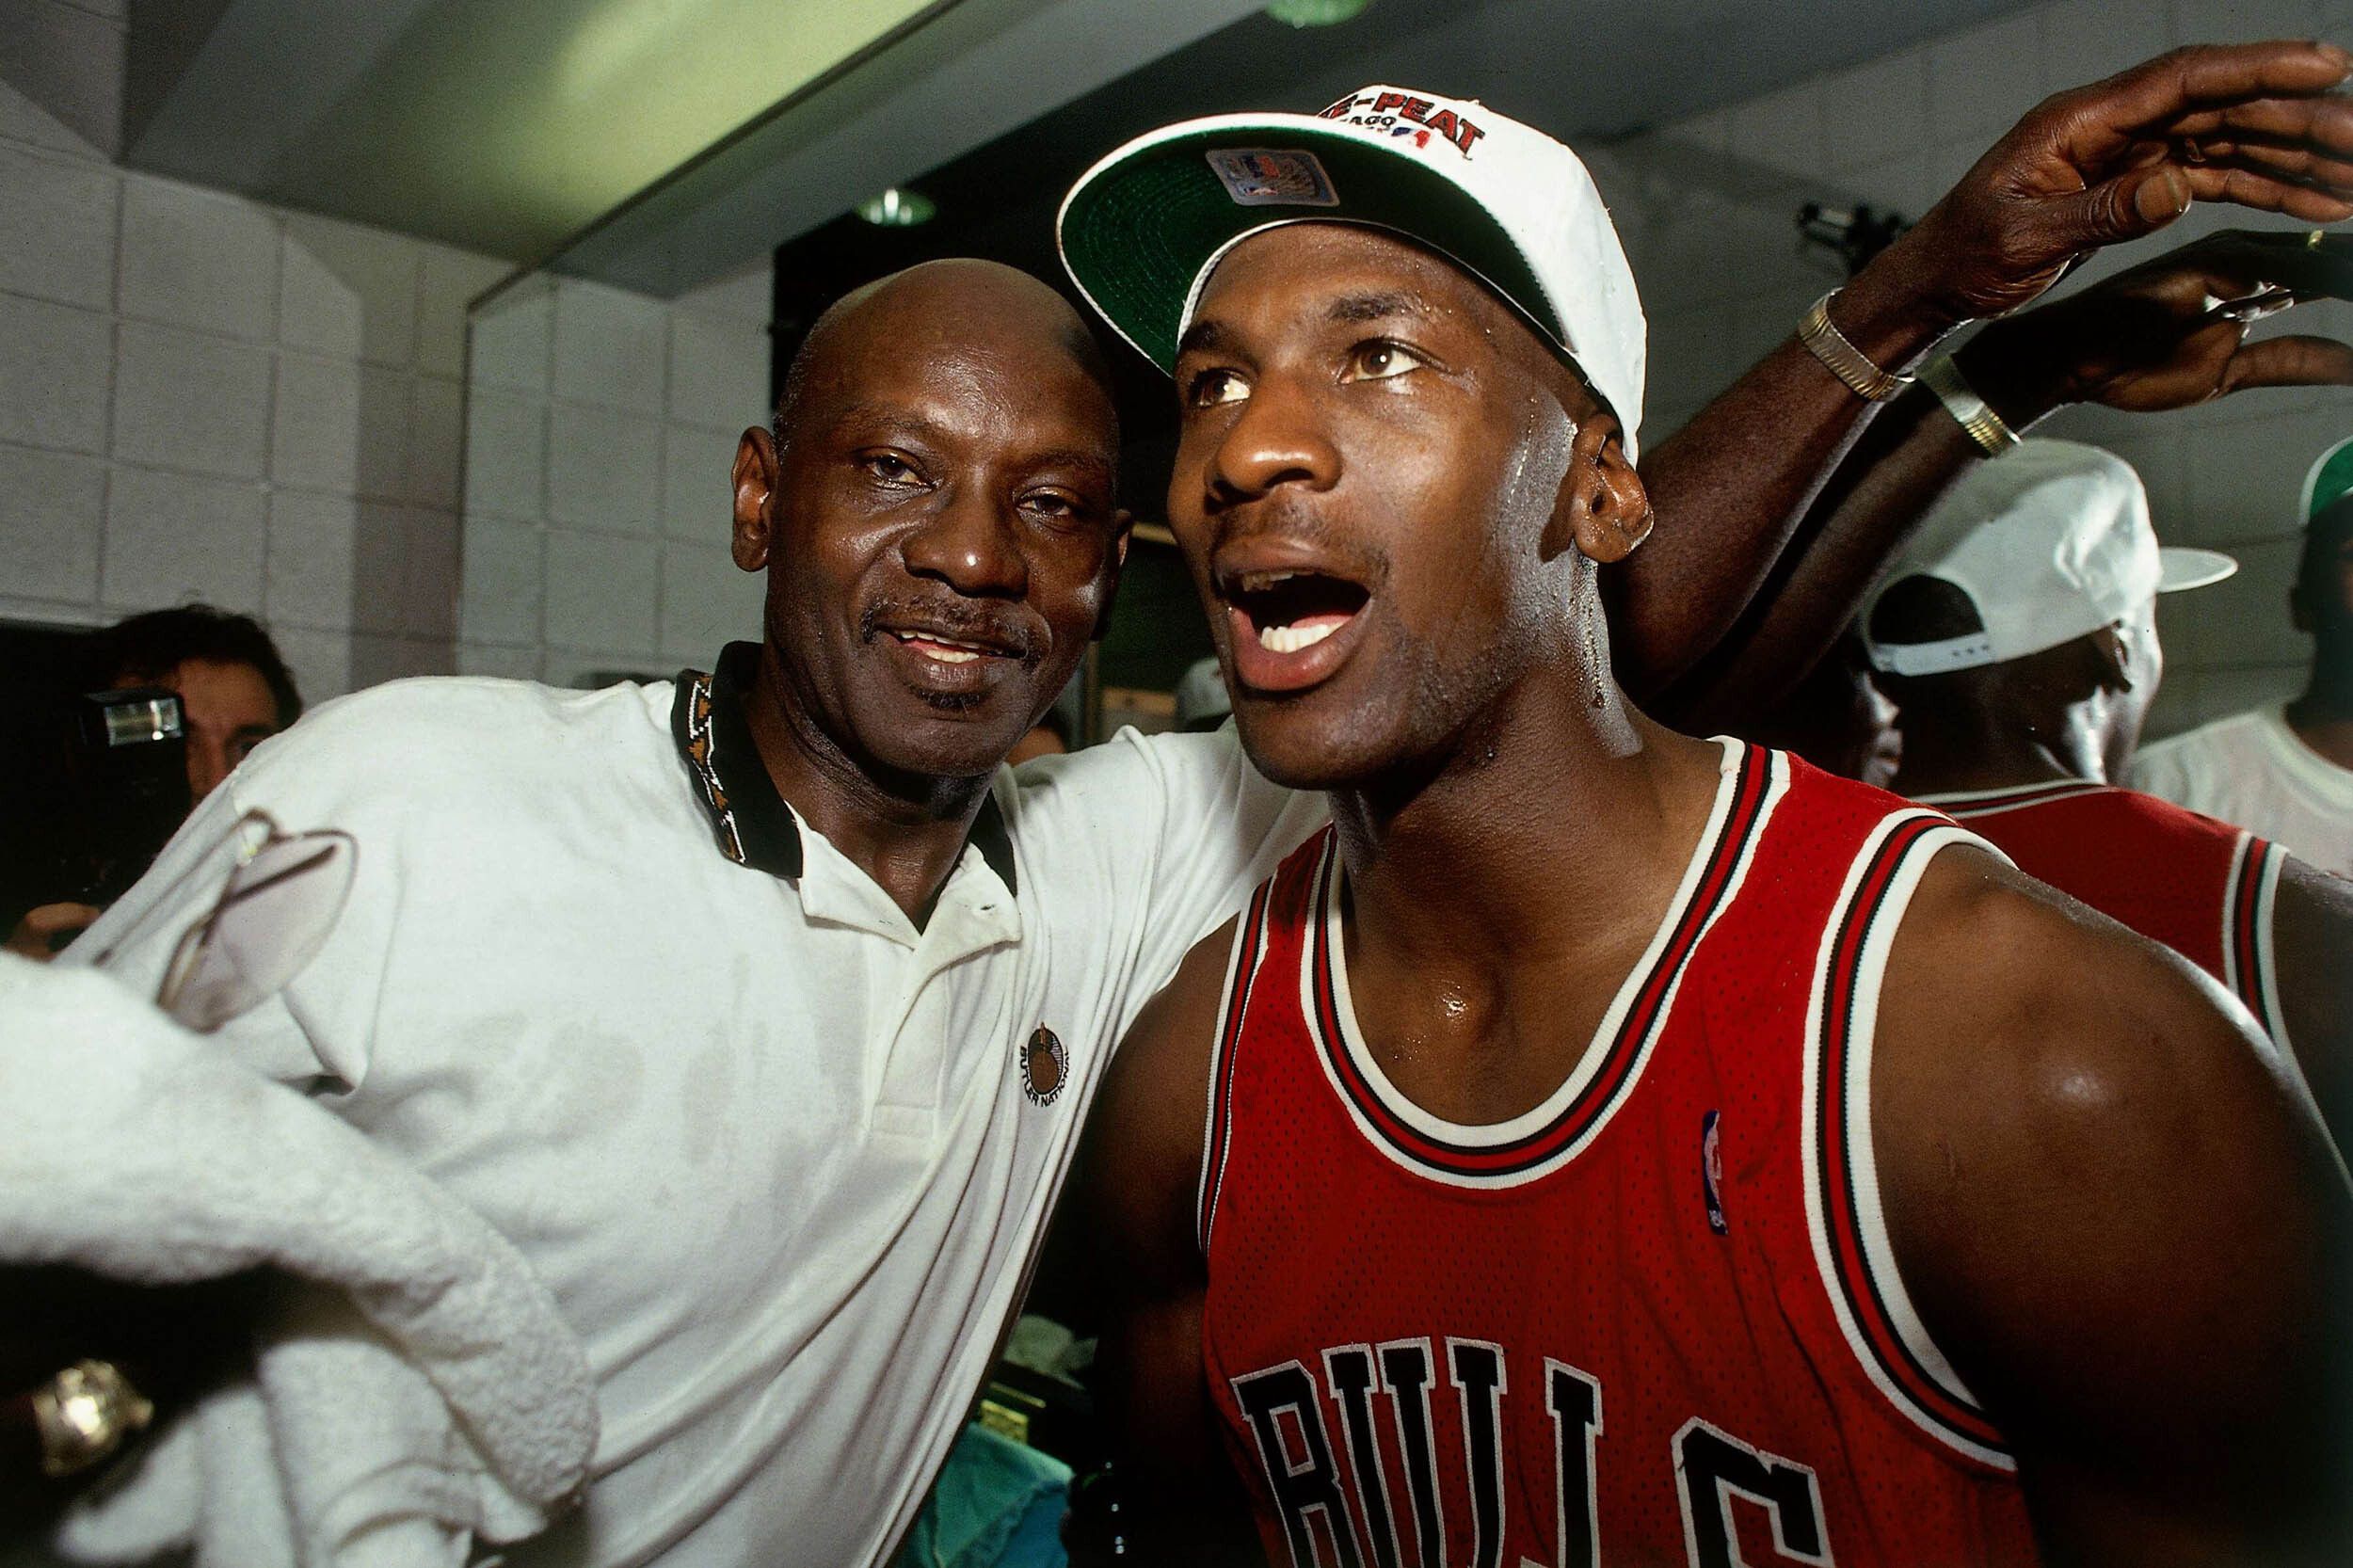 Michael Jordan, the real story of his baseball career